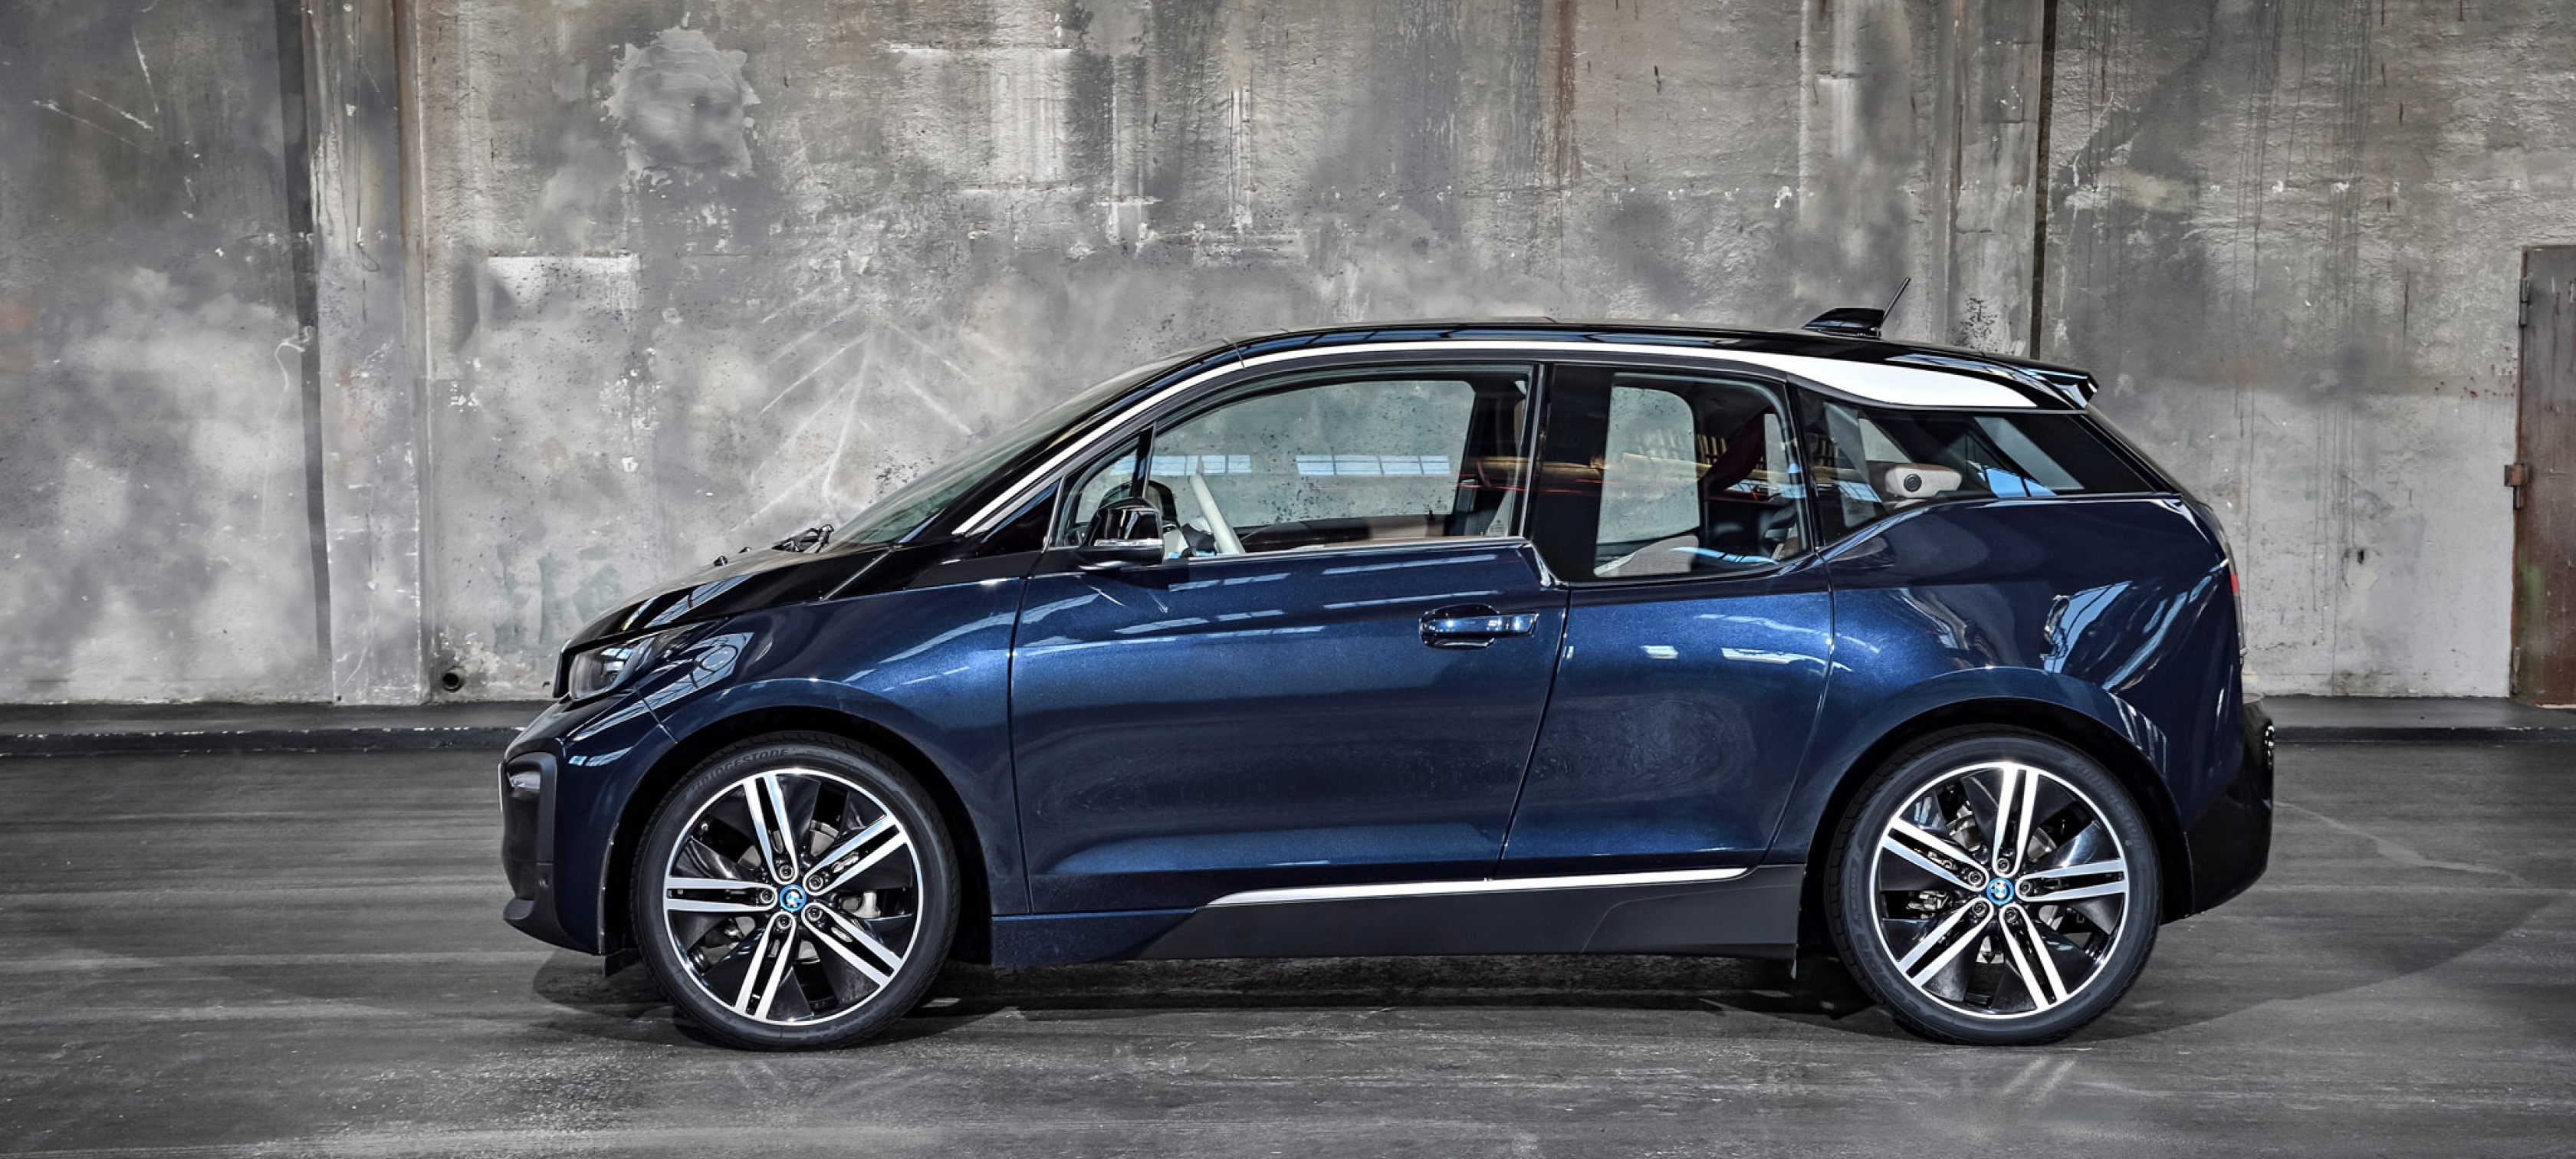 Nuevo BMW i3. 100% eléctrico desde 190 €* al mes.